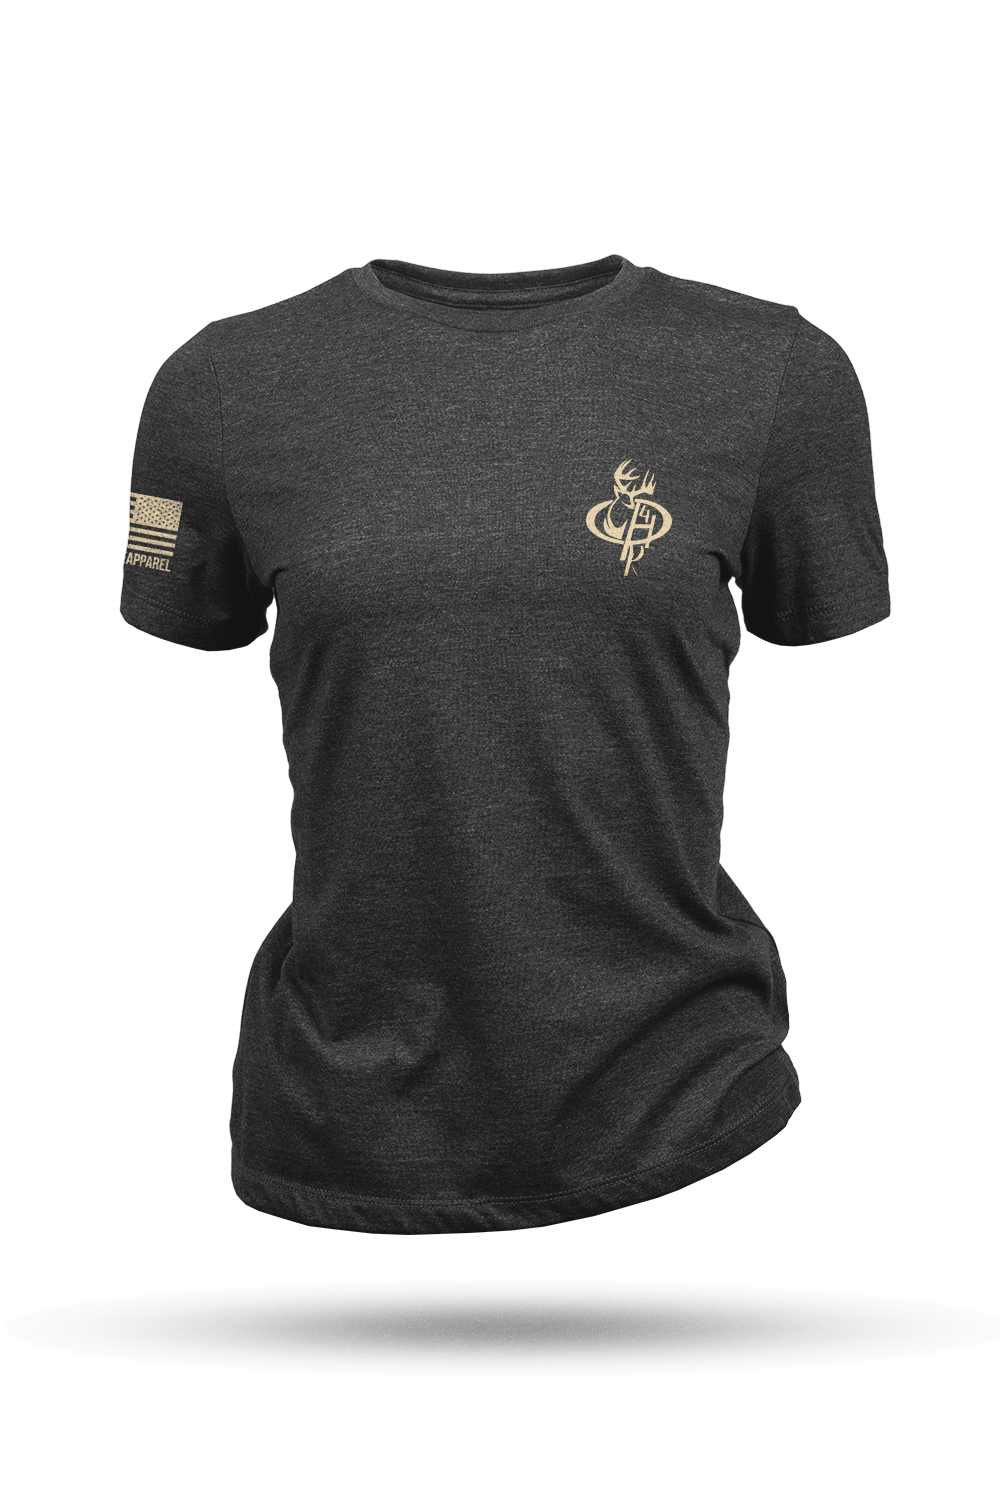 Women's T-Shirt - Military Warriors